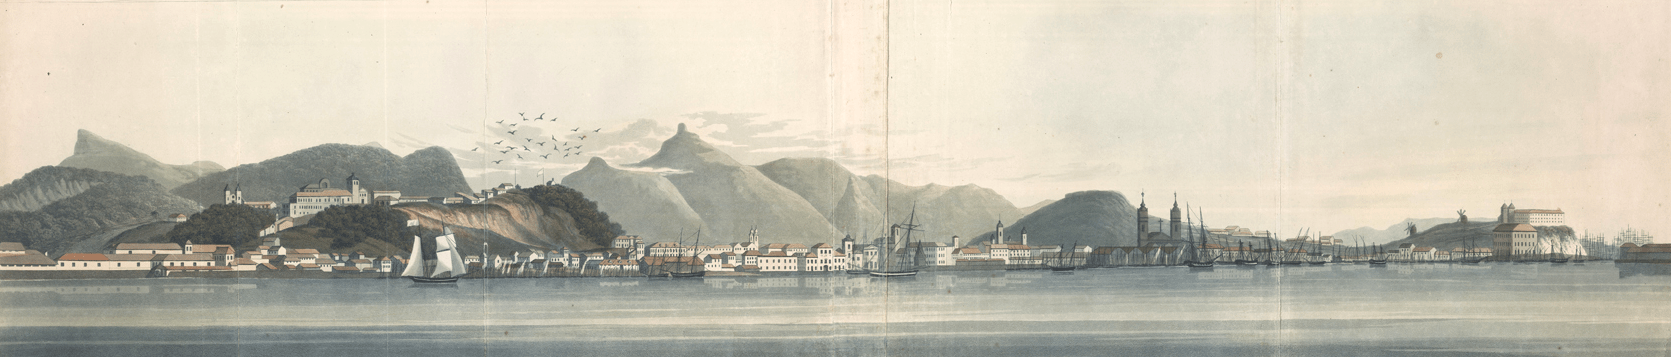 Vista da baía da Guanabara antes dos barcos a vapor. Henry Chamberlain. Acervo BN